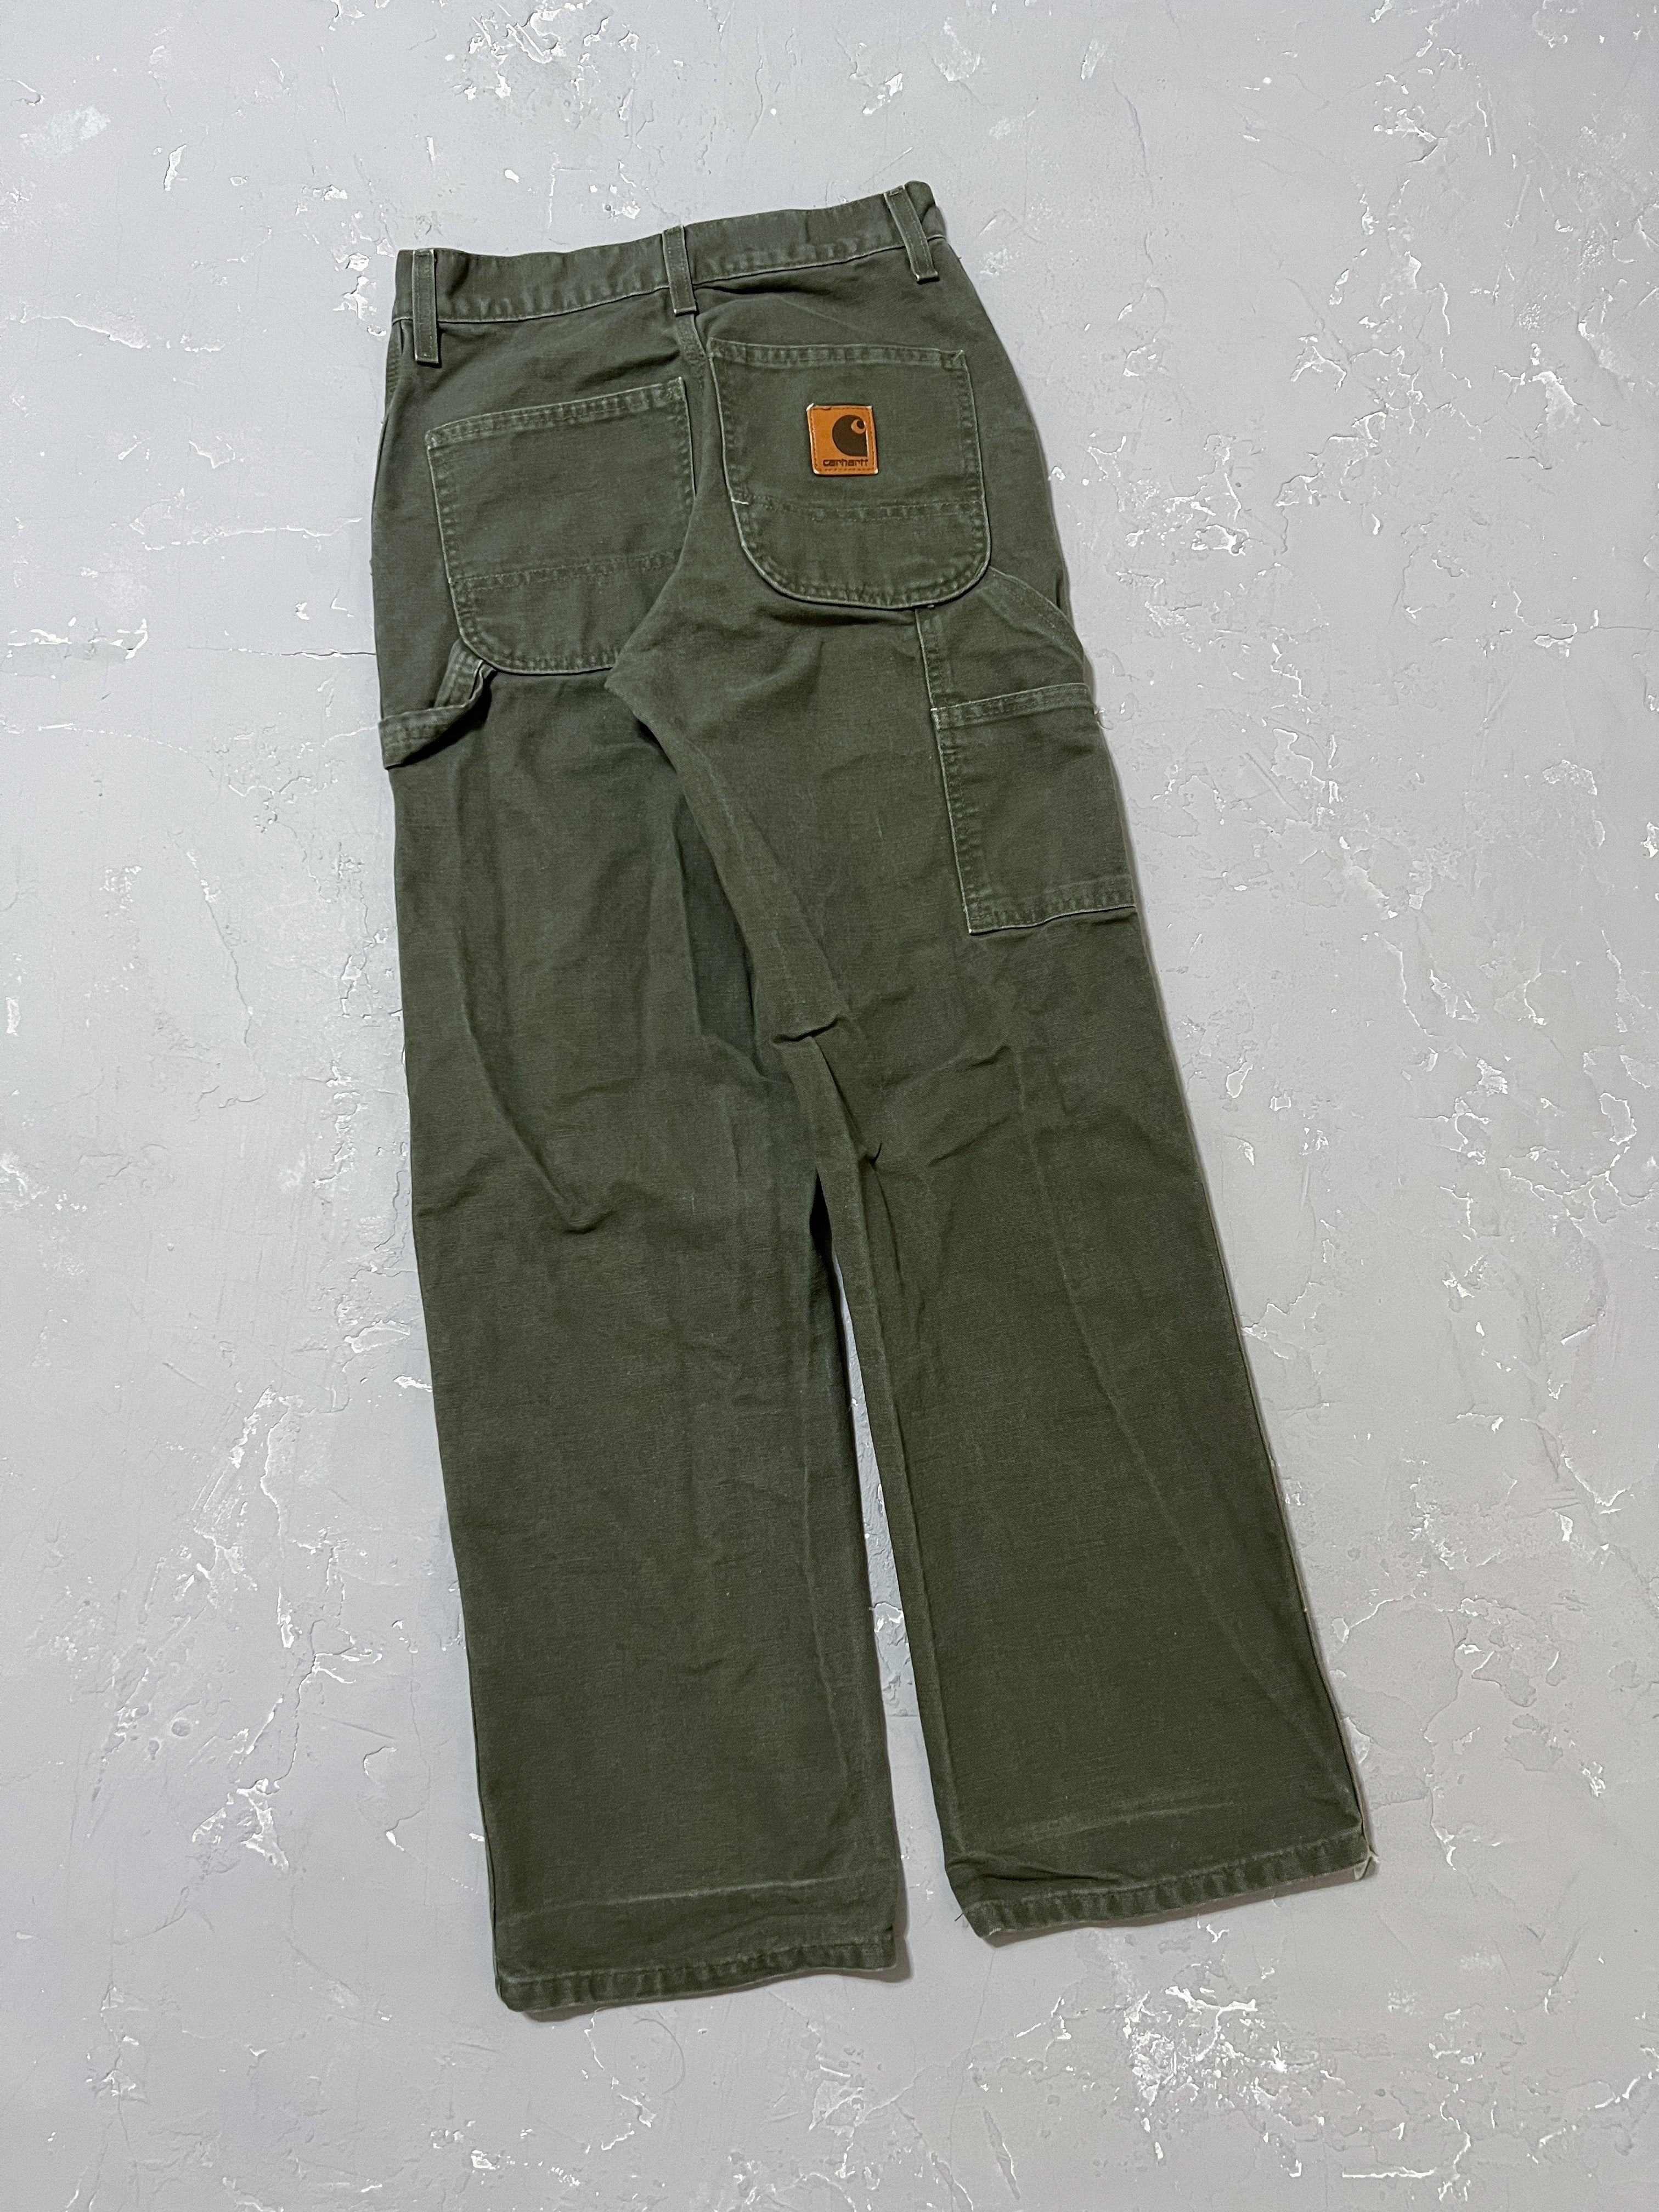 Carhartt Moss Green Carpenter Pants [26 x 30]